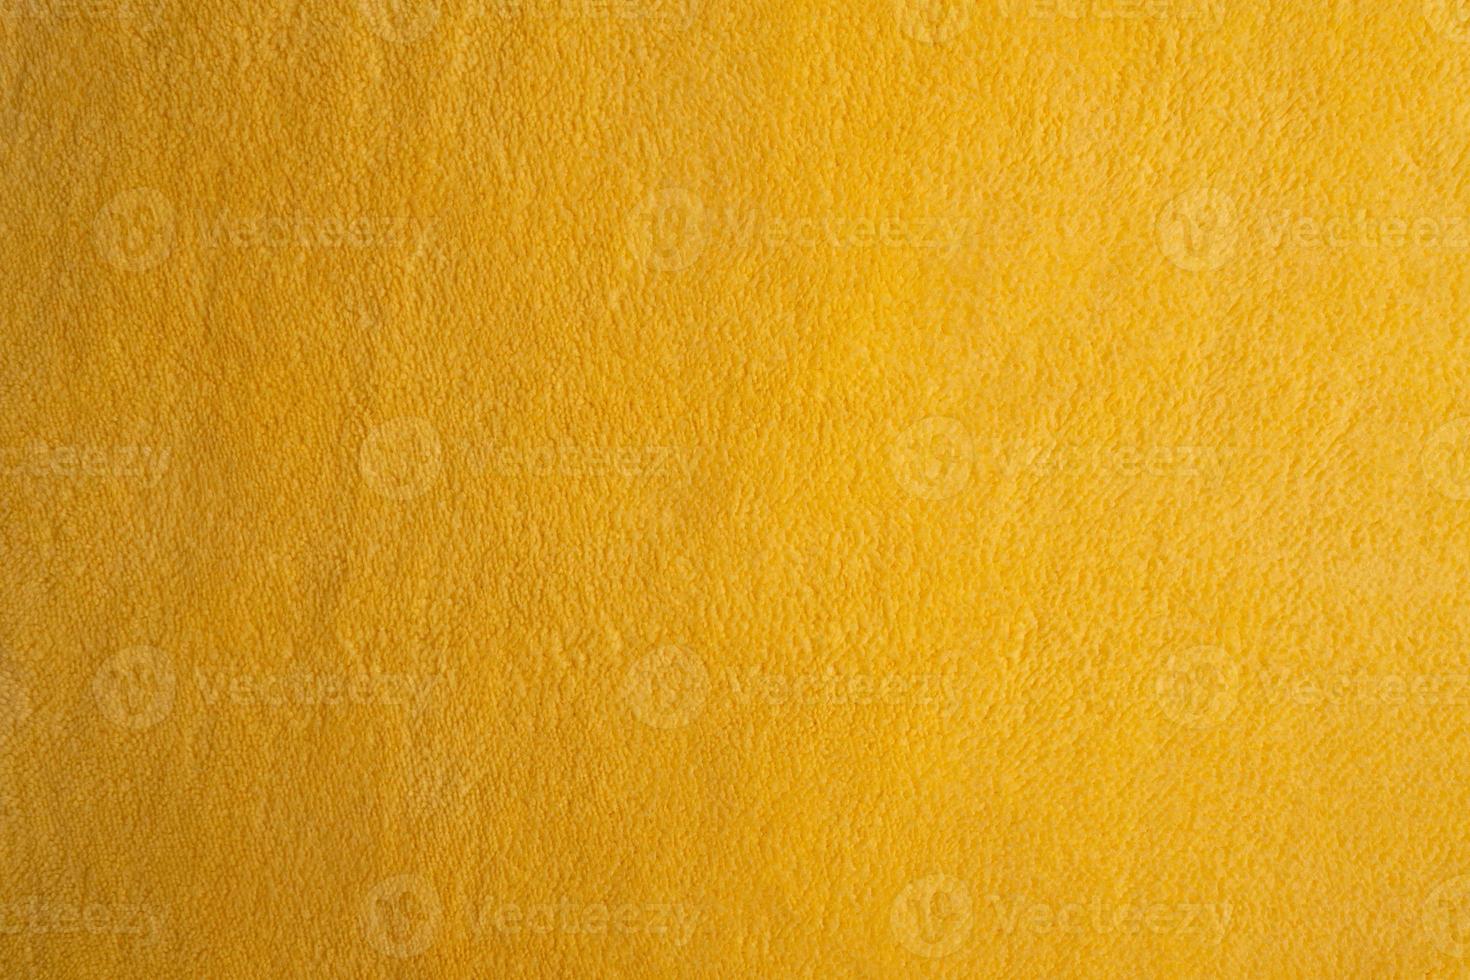 gele stof textuur achtergrond, abstract, close-up textuur van doek foto